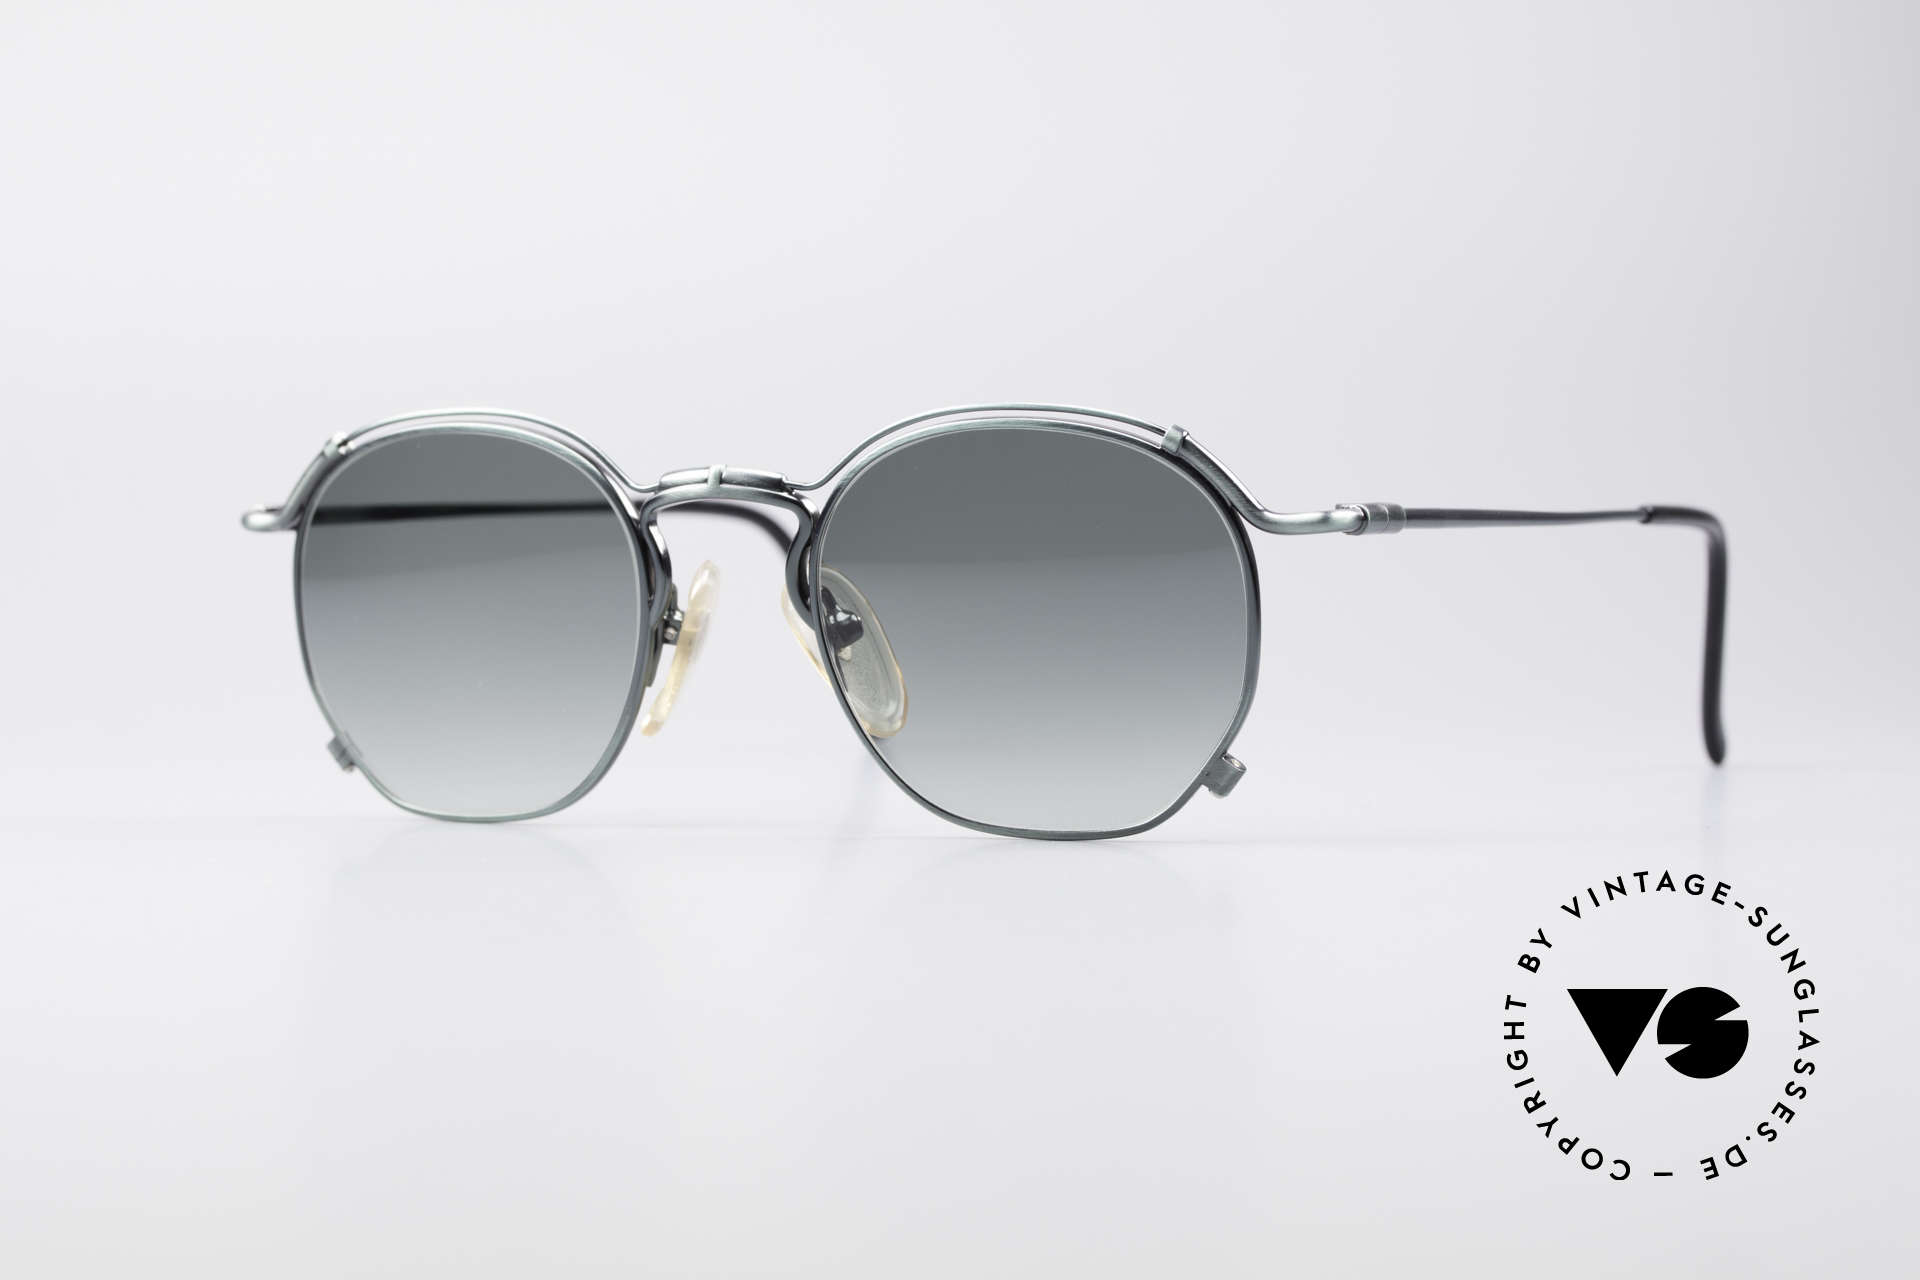 Jean Paul Gaultier 55-2171 90's Vintage Designer Frame, noble Jean Paul Gaultier 90's designer sunglasses, Made for Men and Women